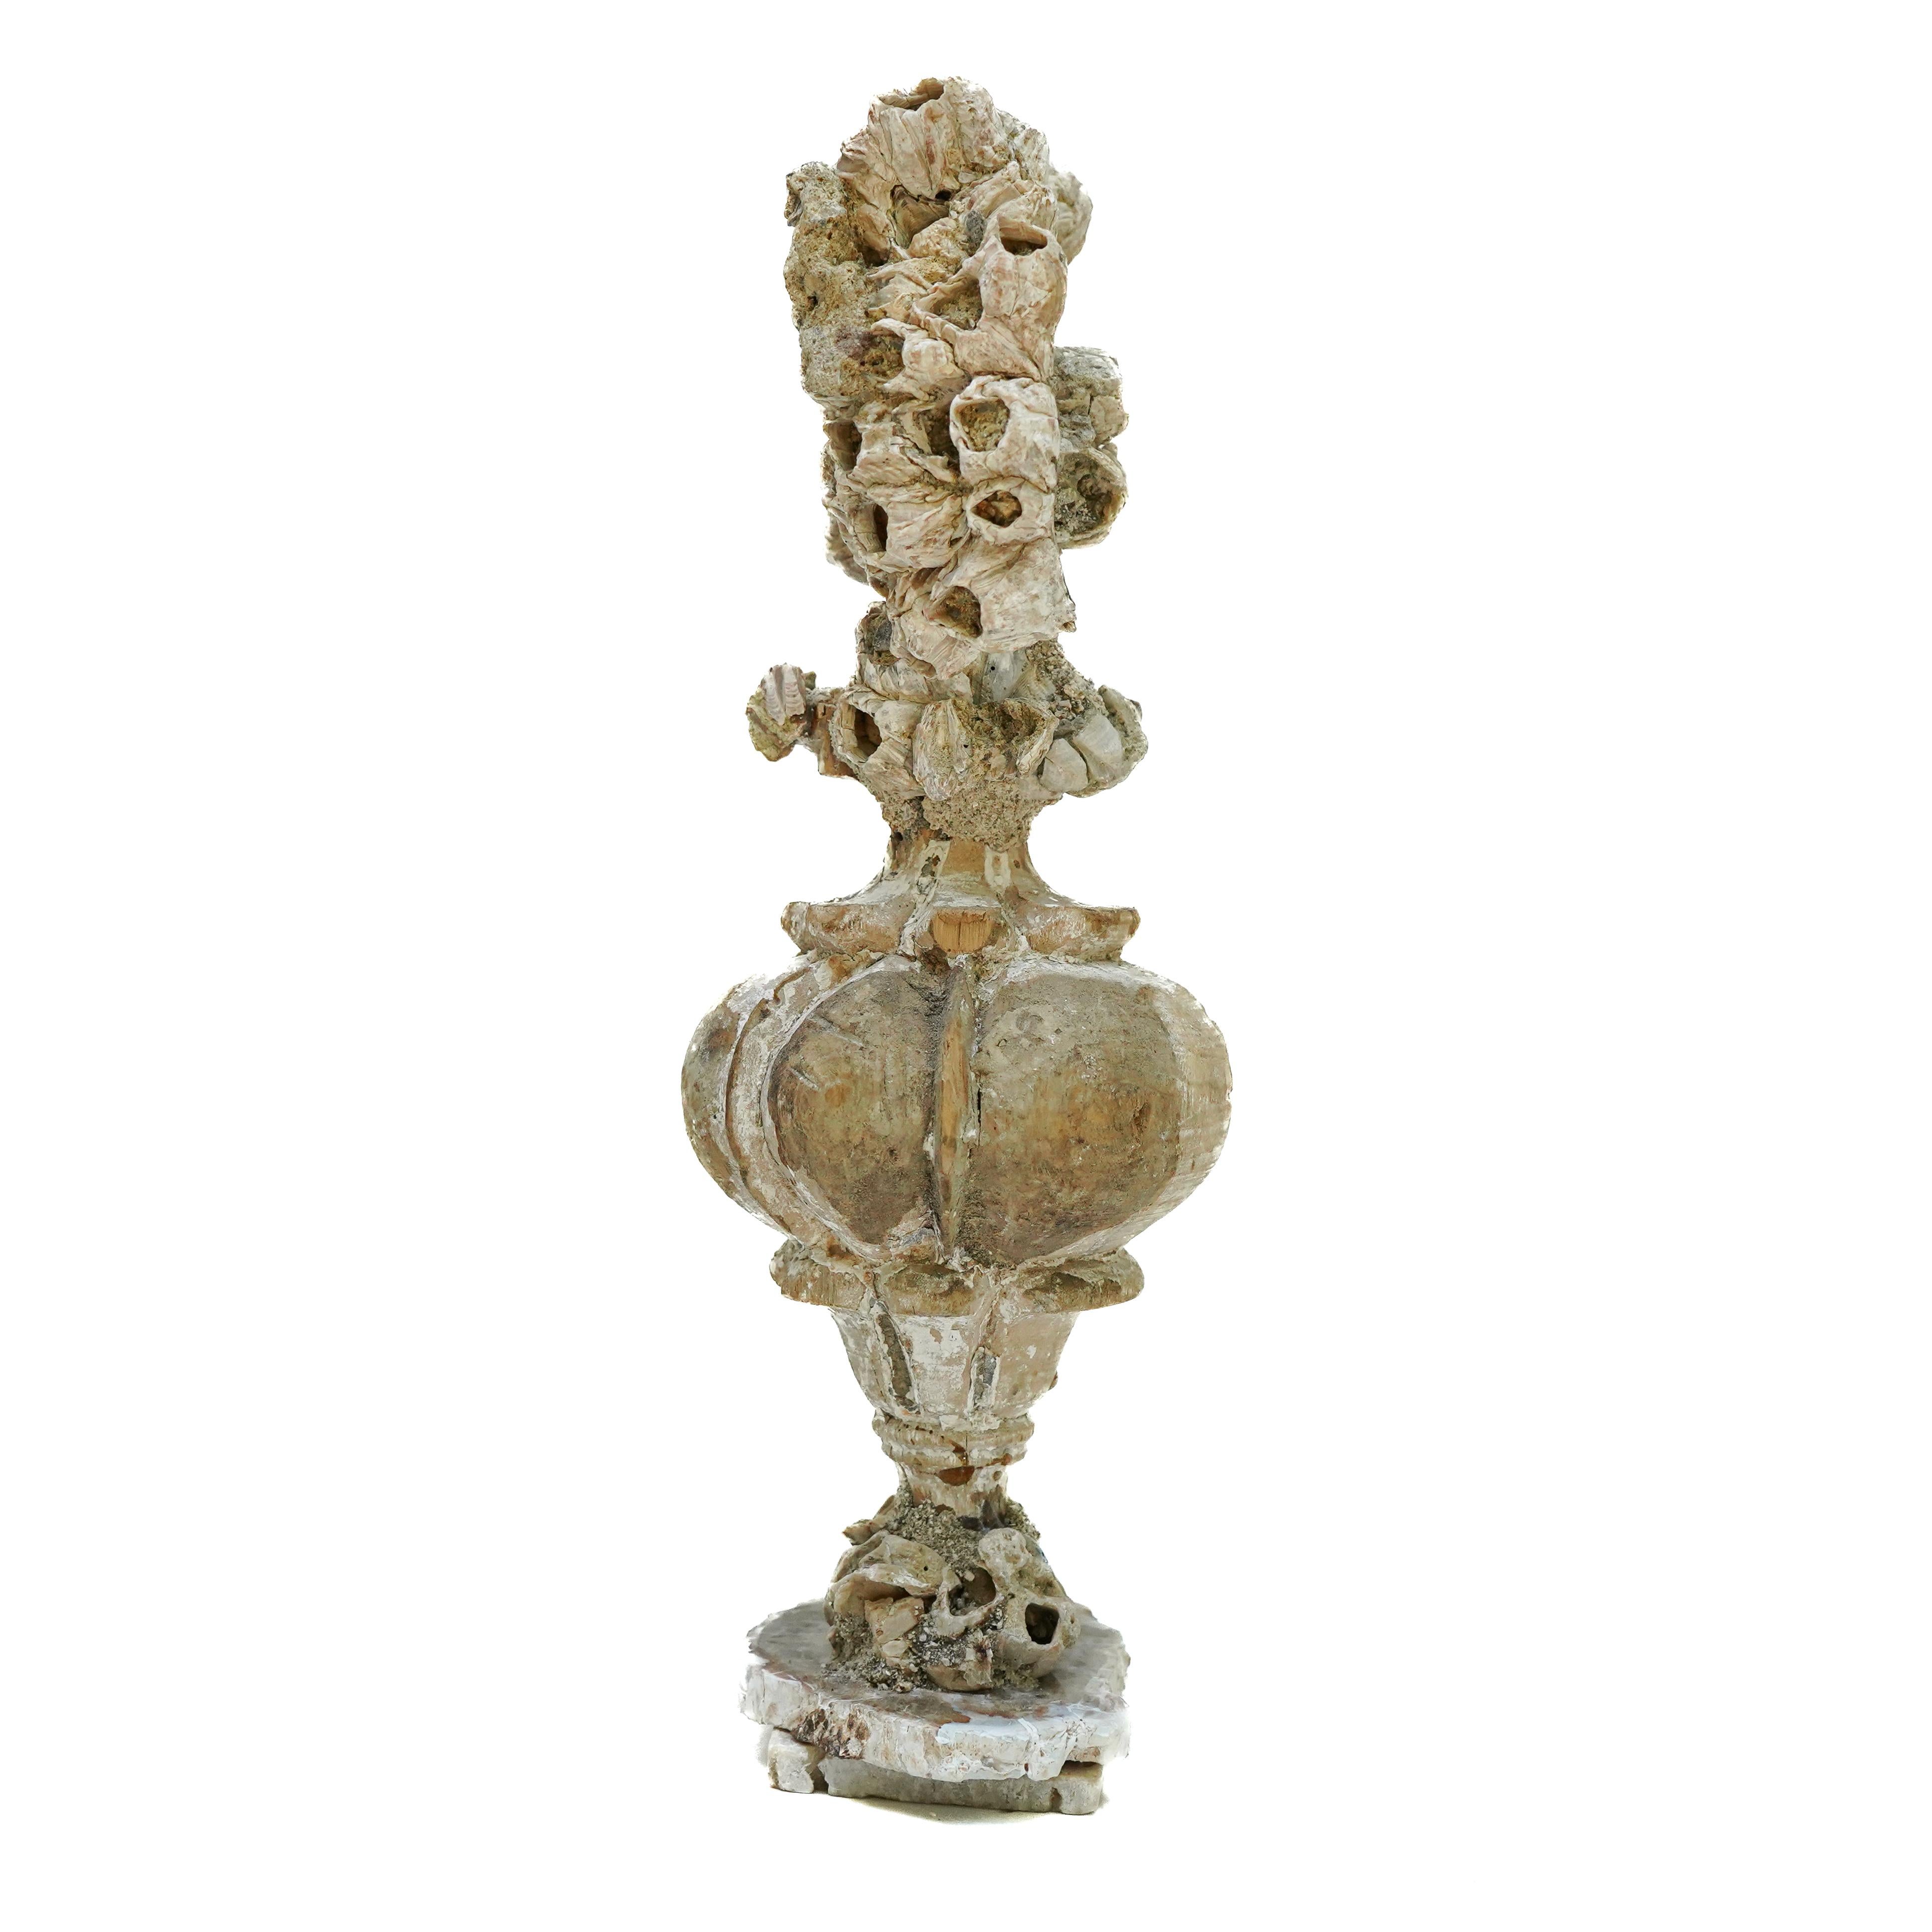 italienische Vase aus dem 18. Jahrhundert mit einem fossilen Seepockenhaufen auf einem Sockel aus versteinertem Holz und Seepocken.

Dieses Fragment stammt aus einer Kirche in Florenz. Es wurde gefunden und vor dem historischen Hochwasser des Arno